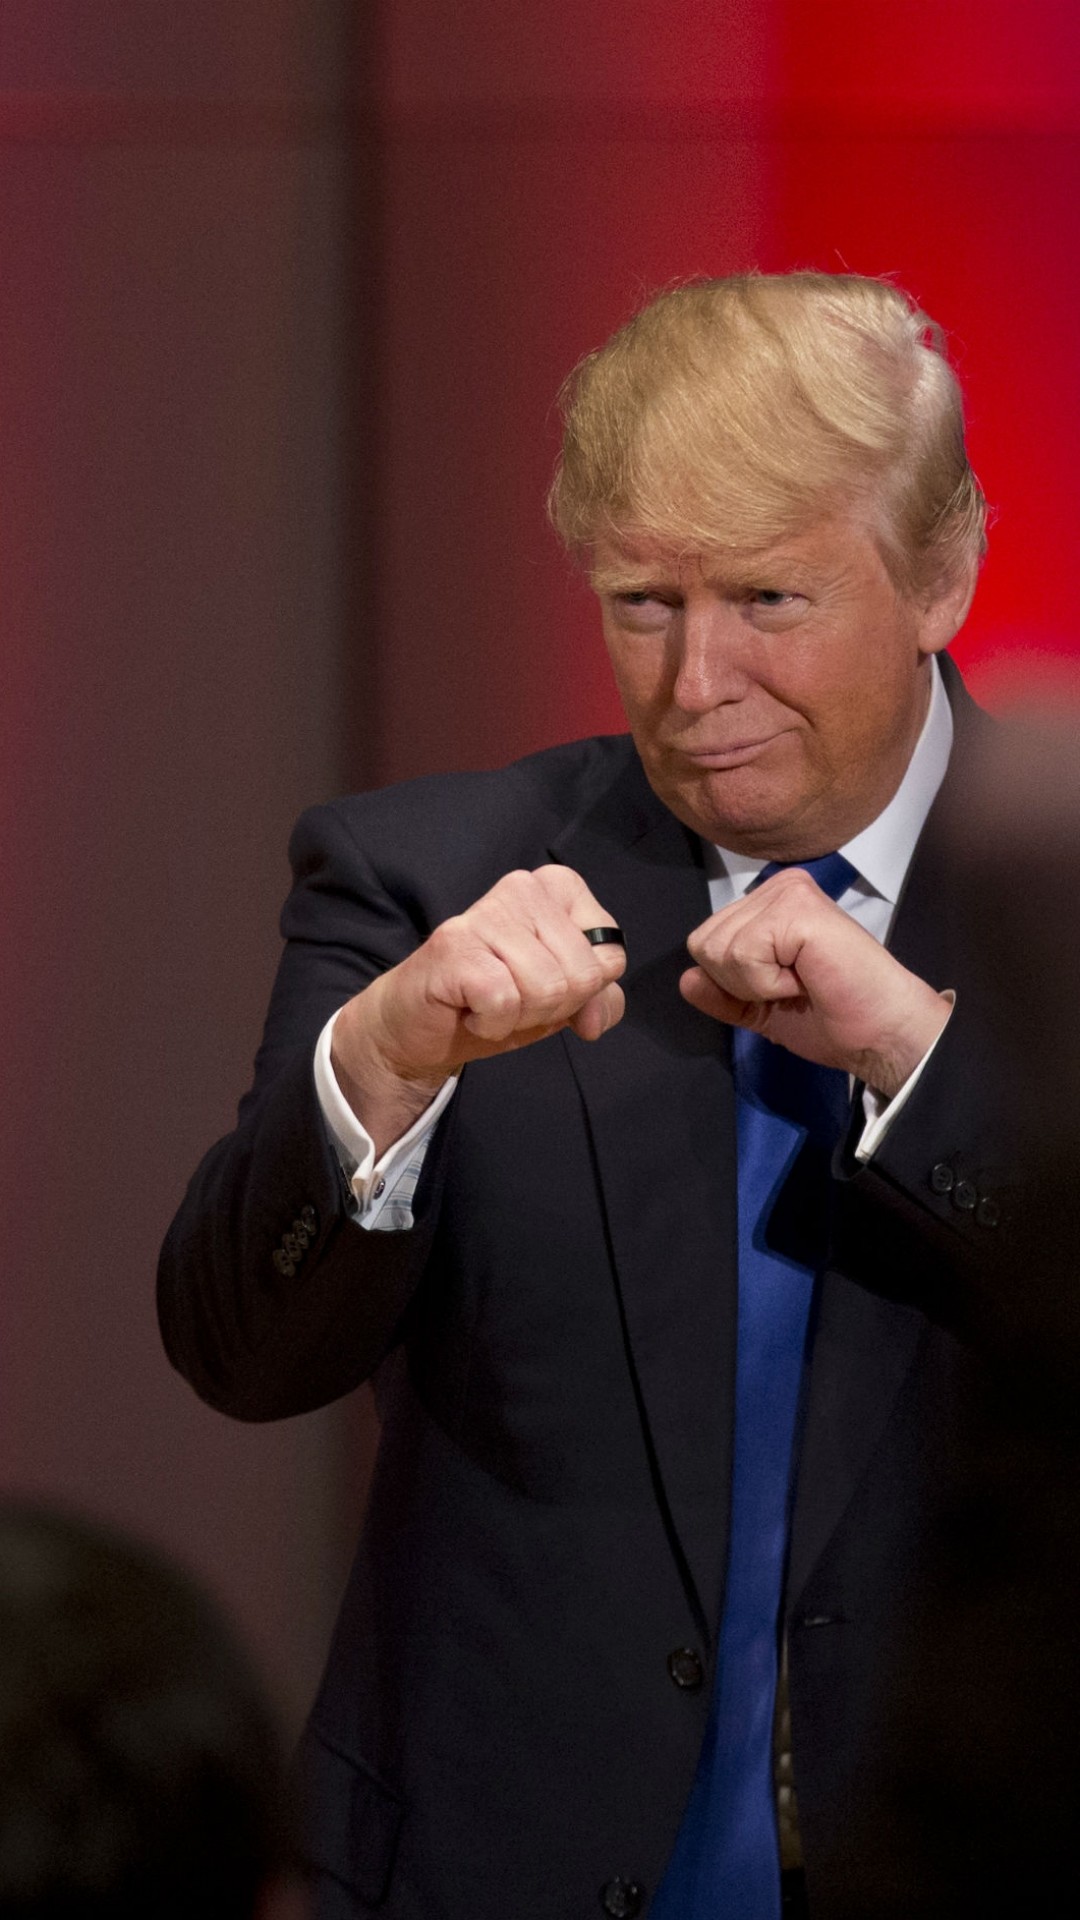 1080x1920 ... Donald Trump Fists Funny iPhone 8 wallpaper.